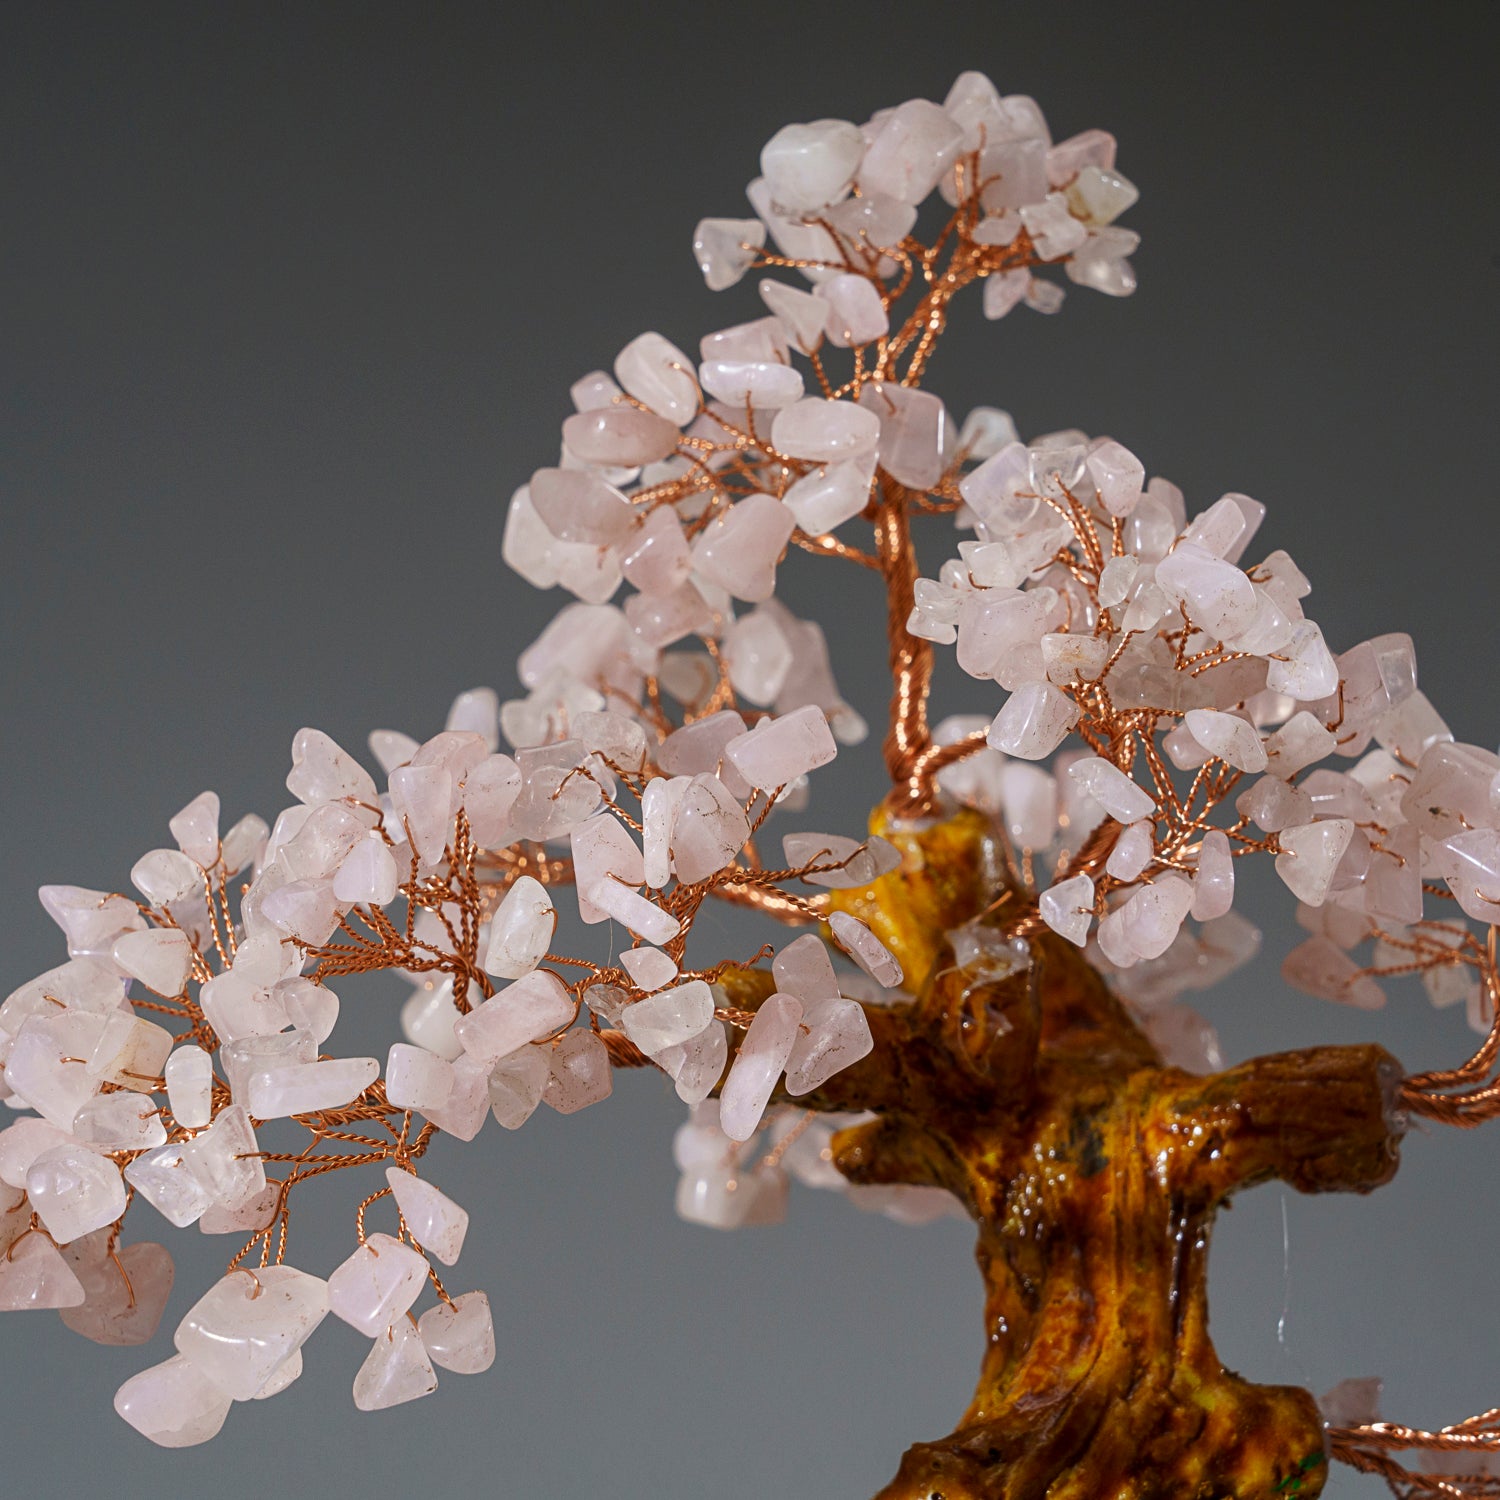 Genuine Rose Quartz Bonsai Tree in Round Ceramic Pot (8.5” Tall)